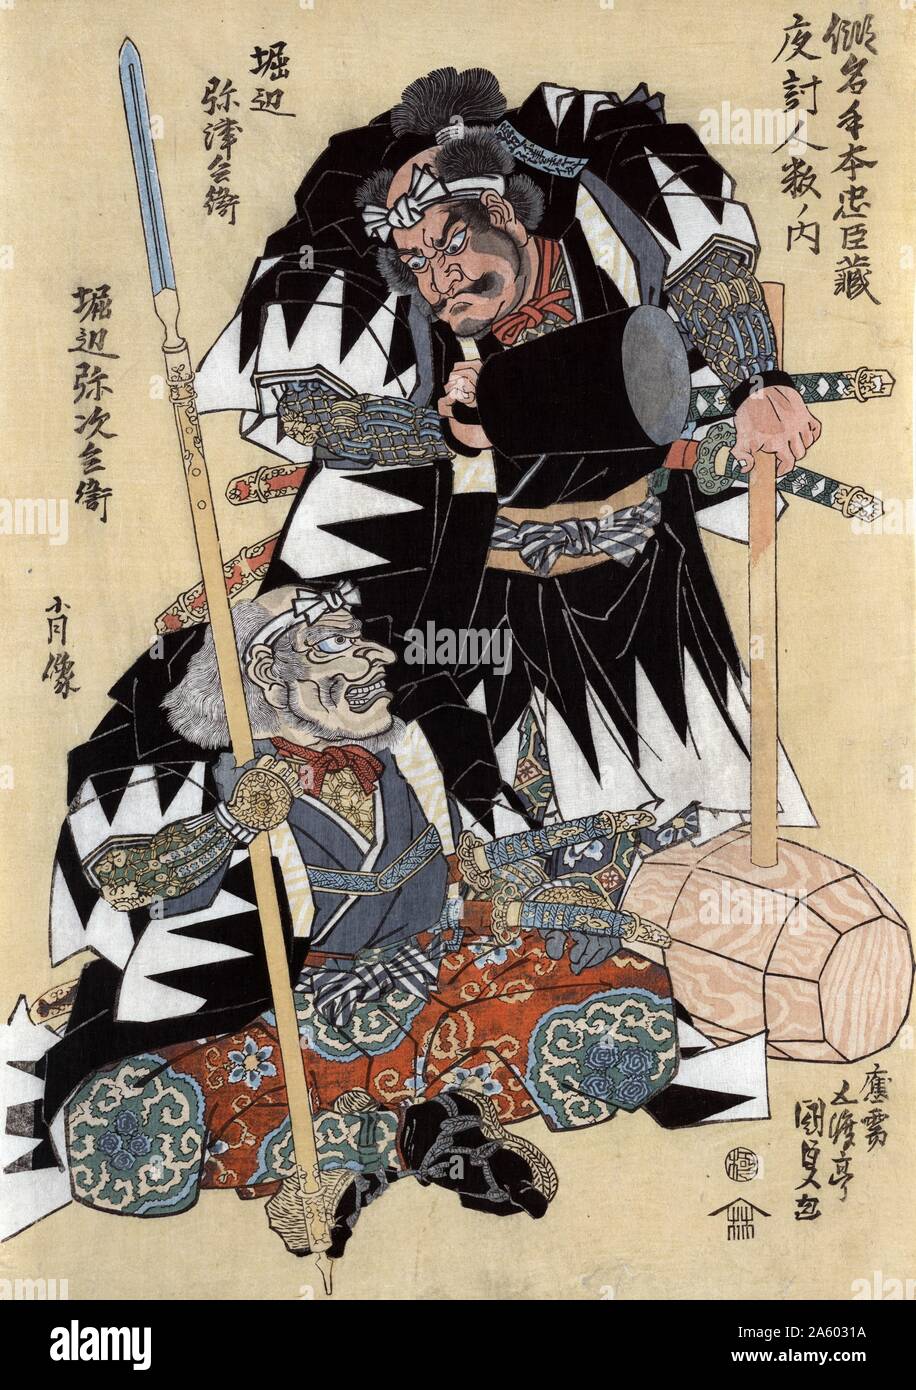 Portraits de Horibe Yatsubei Yagybel et Horibe par Utagawa Toyokuni (1786-1830). Une scène de la pièce "l'entrepôt de la loyauté". Les deux chiffres dans l'image sont les acteurs Yatsubei Yasybei Horibe (Yagybe) et Horibe. Gravure sur bois en couleur. Banque D'Images